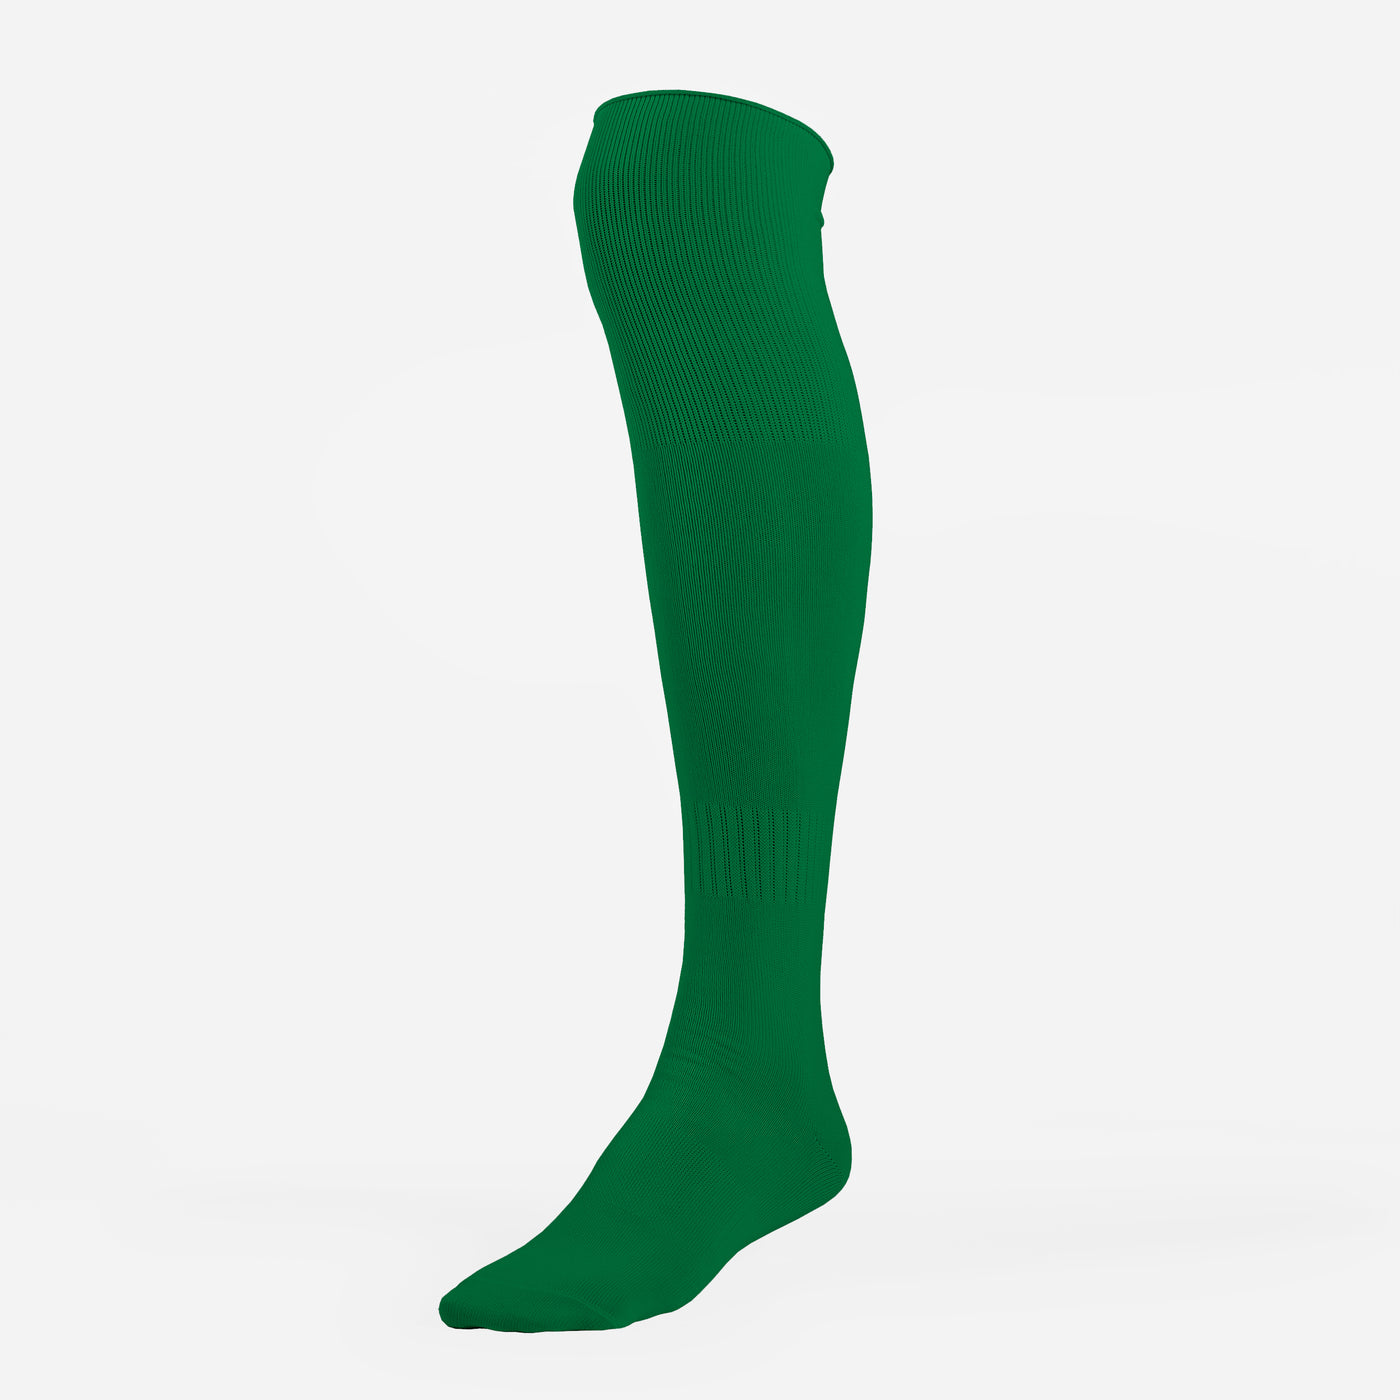 Hue Green Over The Knee Sport Socks